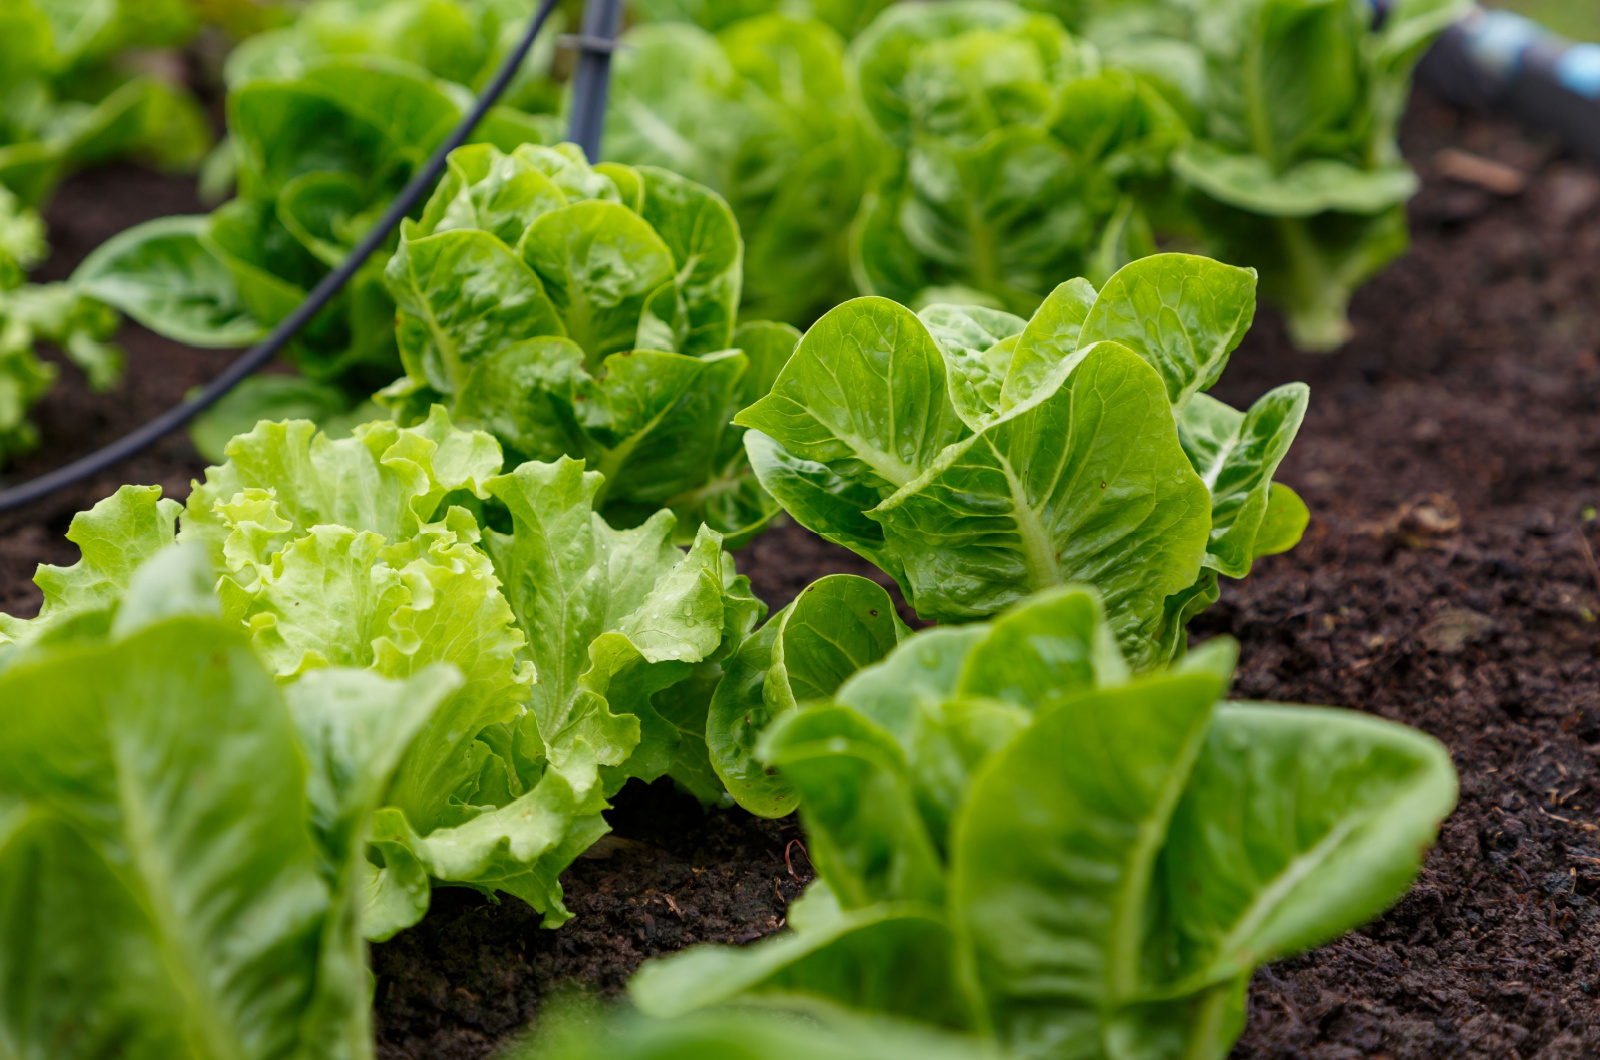 Fresh lettuce in a vegetable garden